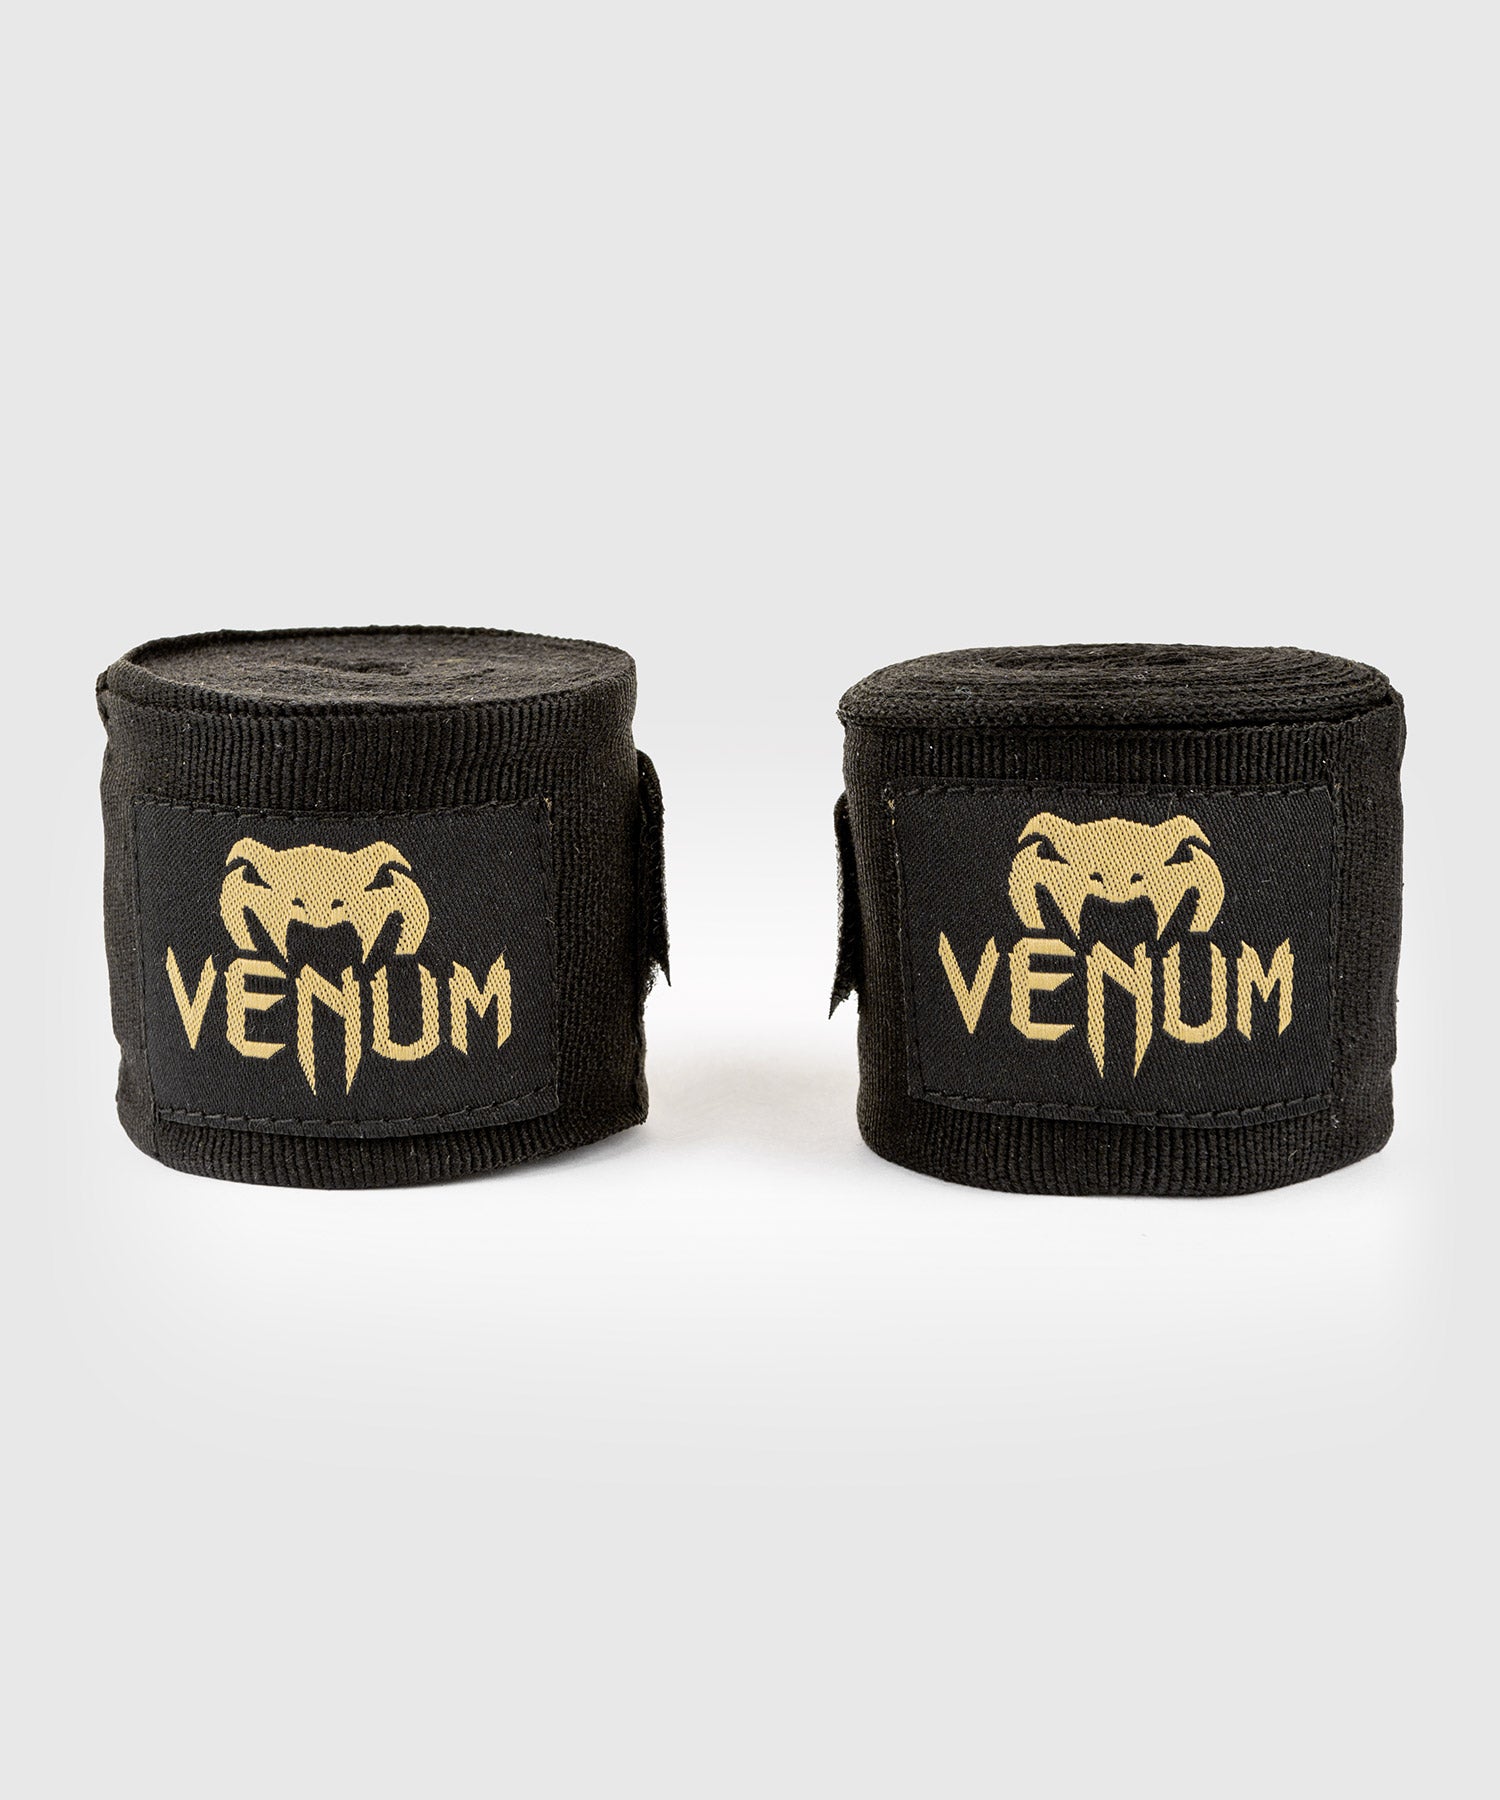 Bandes de boxe Venum Kontact - 2,5 mètres - Noir/Or – Venum France